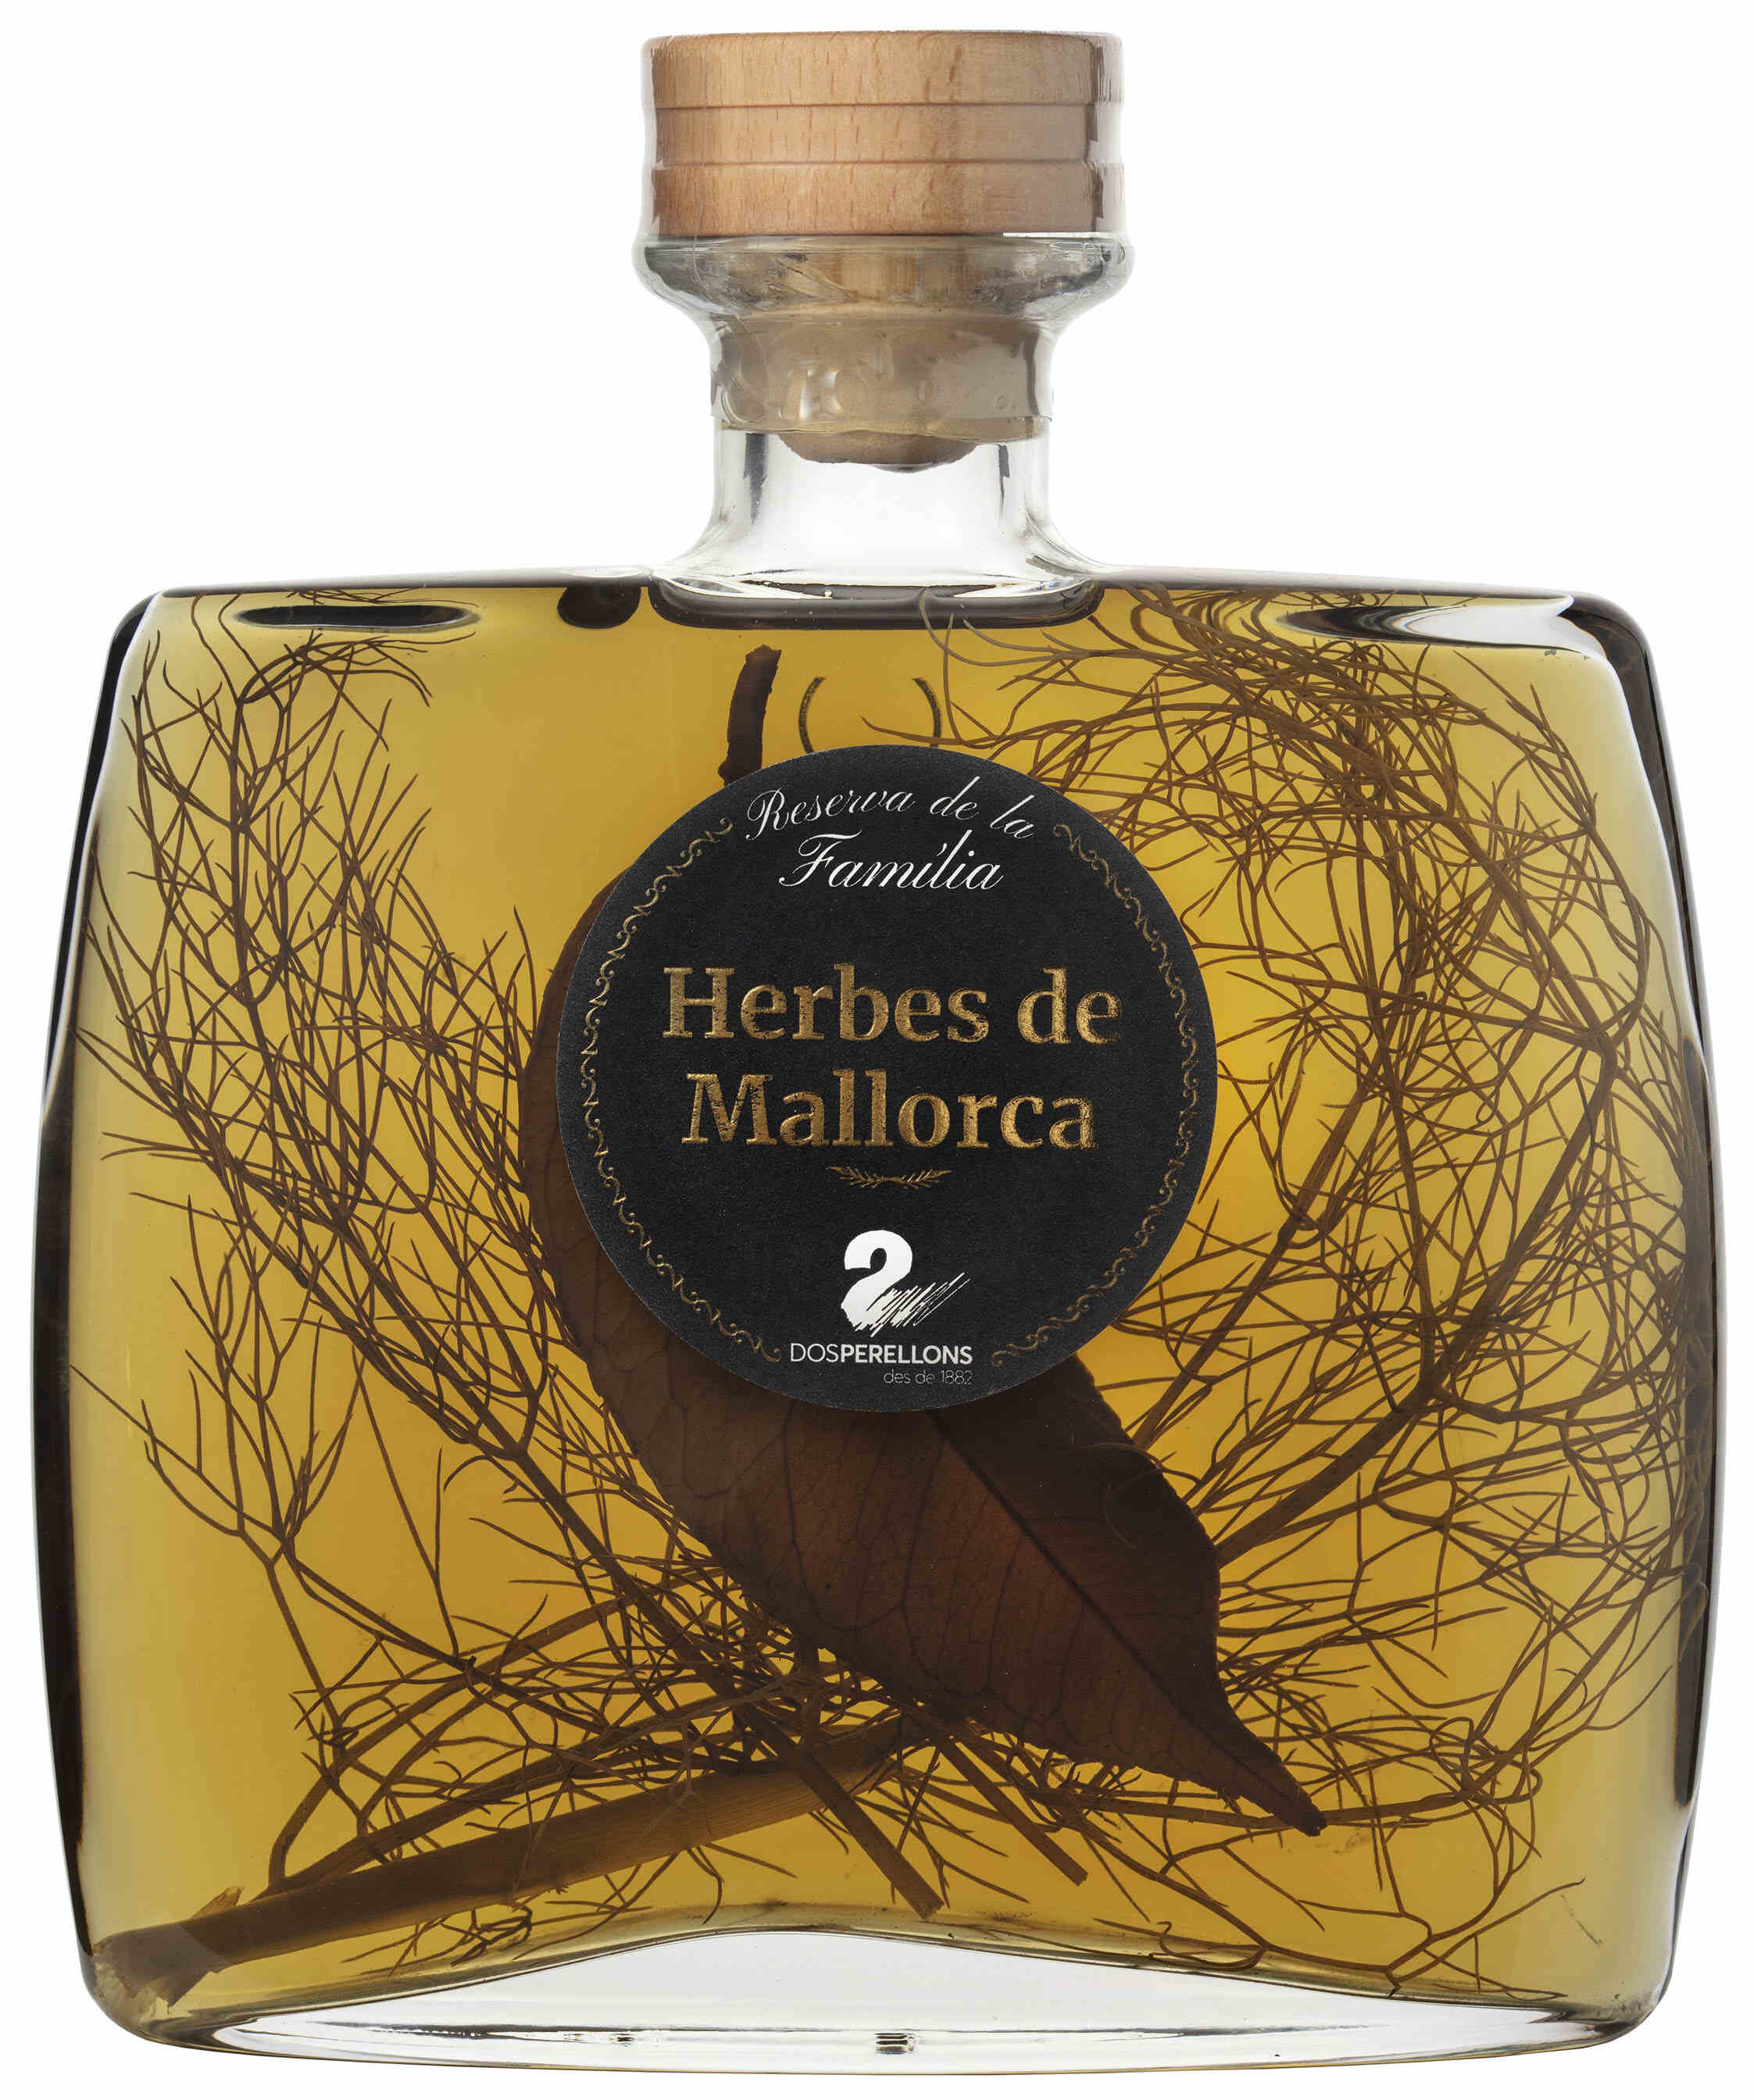 Herbs of Mallorca special edition - Dos Perellons